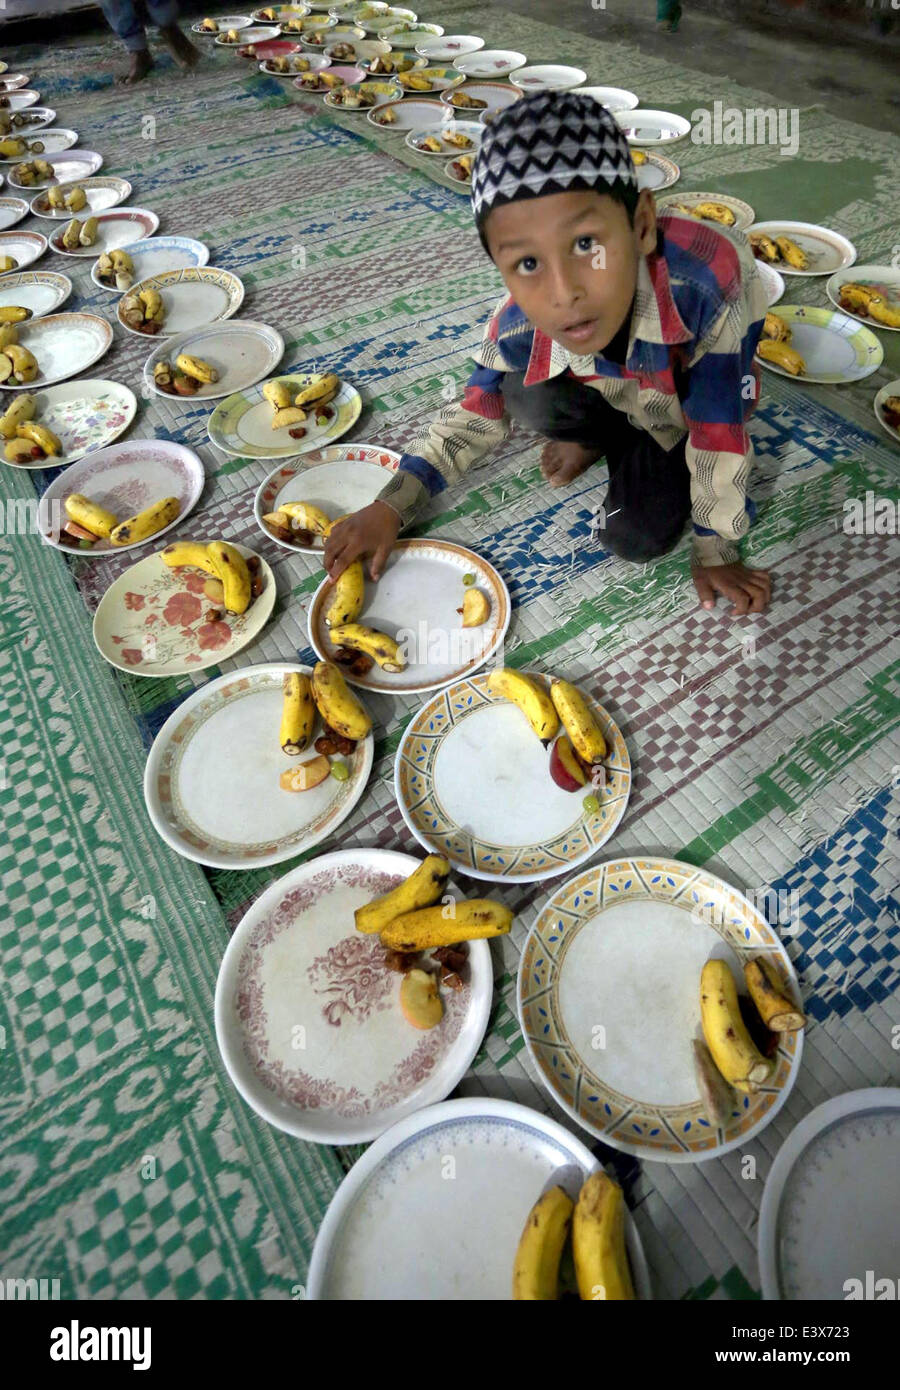 Guwahati, Inde. 30 Juin, 2014. Un garçon musulman se prépare à déjeuner le premier jour du Ramadan à un sanctuaire musulman pendant le mois sacré du Ramadan à Guwahati, Inde, le 30 juin 2014. Les musulmans à travers le monde observent le saint mois de jeûne du Ramadan, lorsqu'ils s'abstiennent de manger, de boire et d'autres plaisirs du lever au coucher du soleil. Credit : Stringer/Xinhua/Alamy Live News Banque D'Images